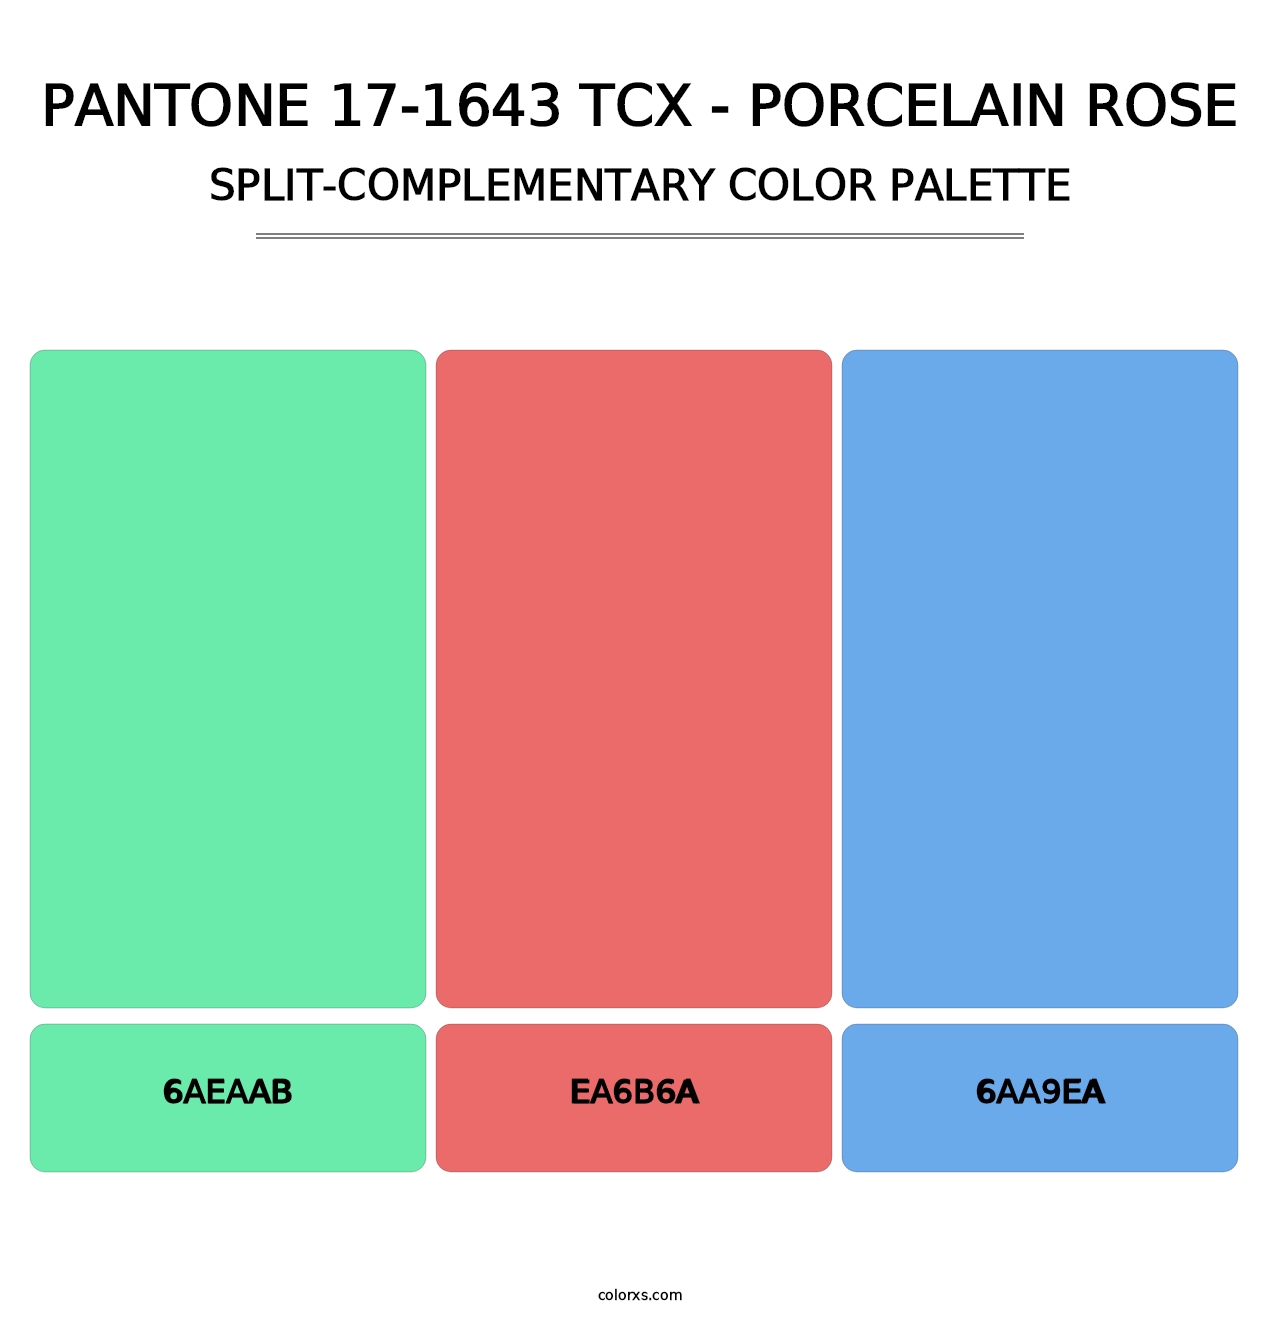 PANTONE 17-1643 TCX - Porcelain Rose - Split-Complementary Color Palette